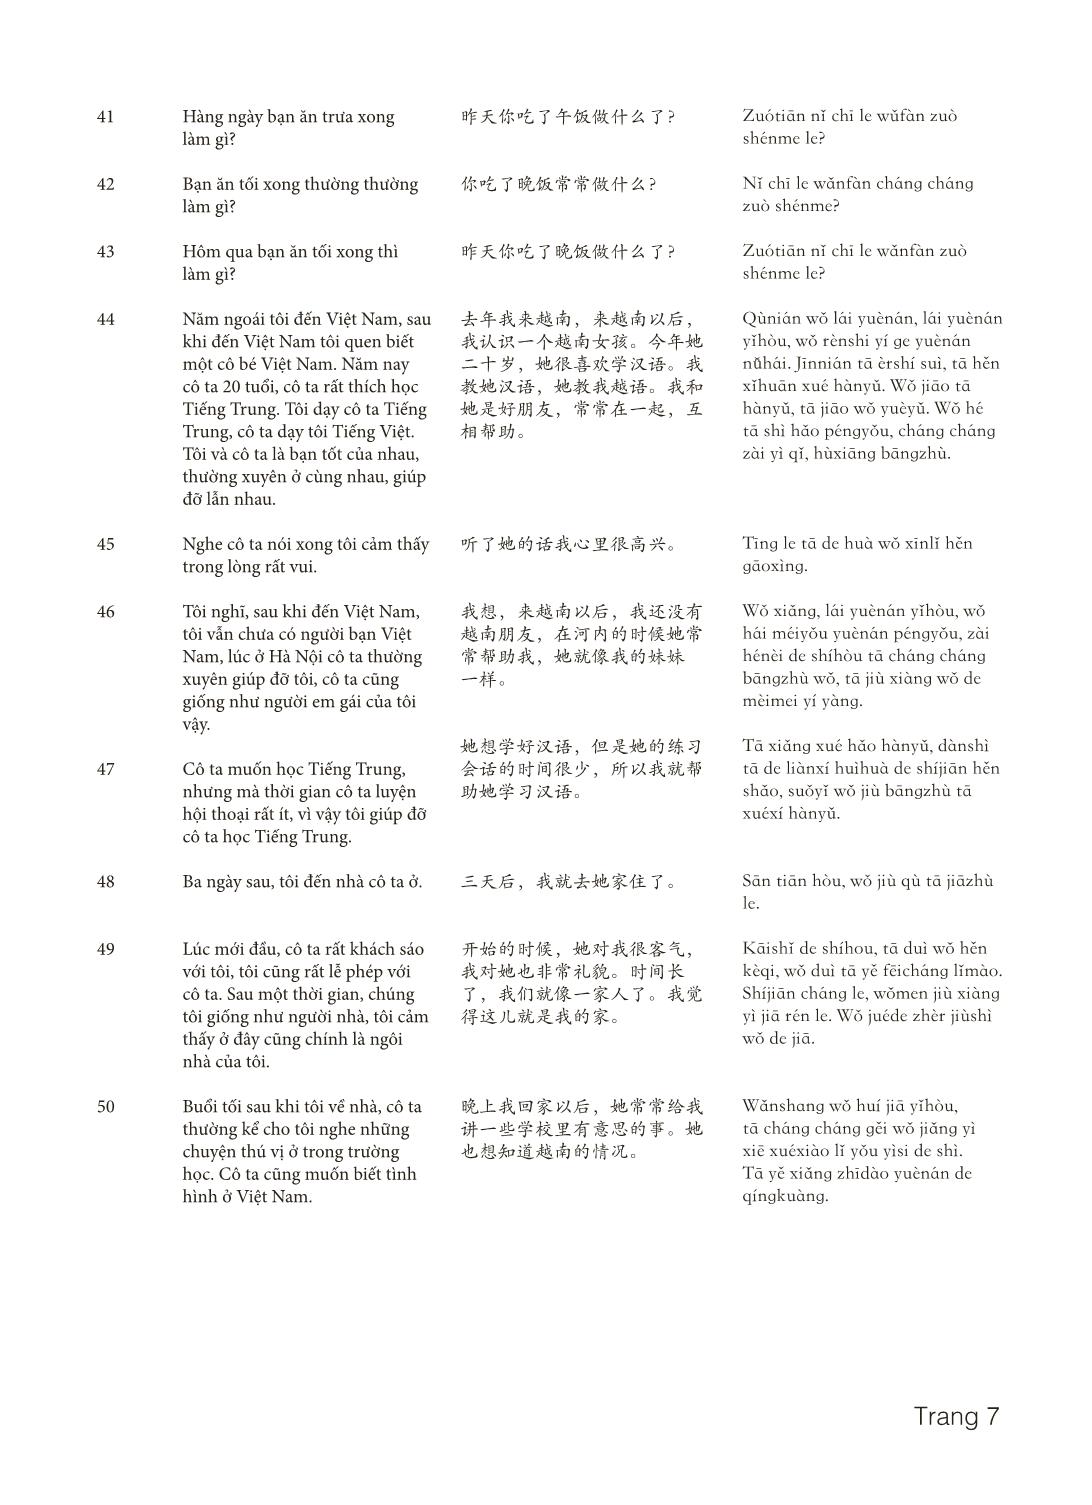 3000 Câu đàm thoại tiếng Hoa - Phần 11 trang 7